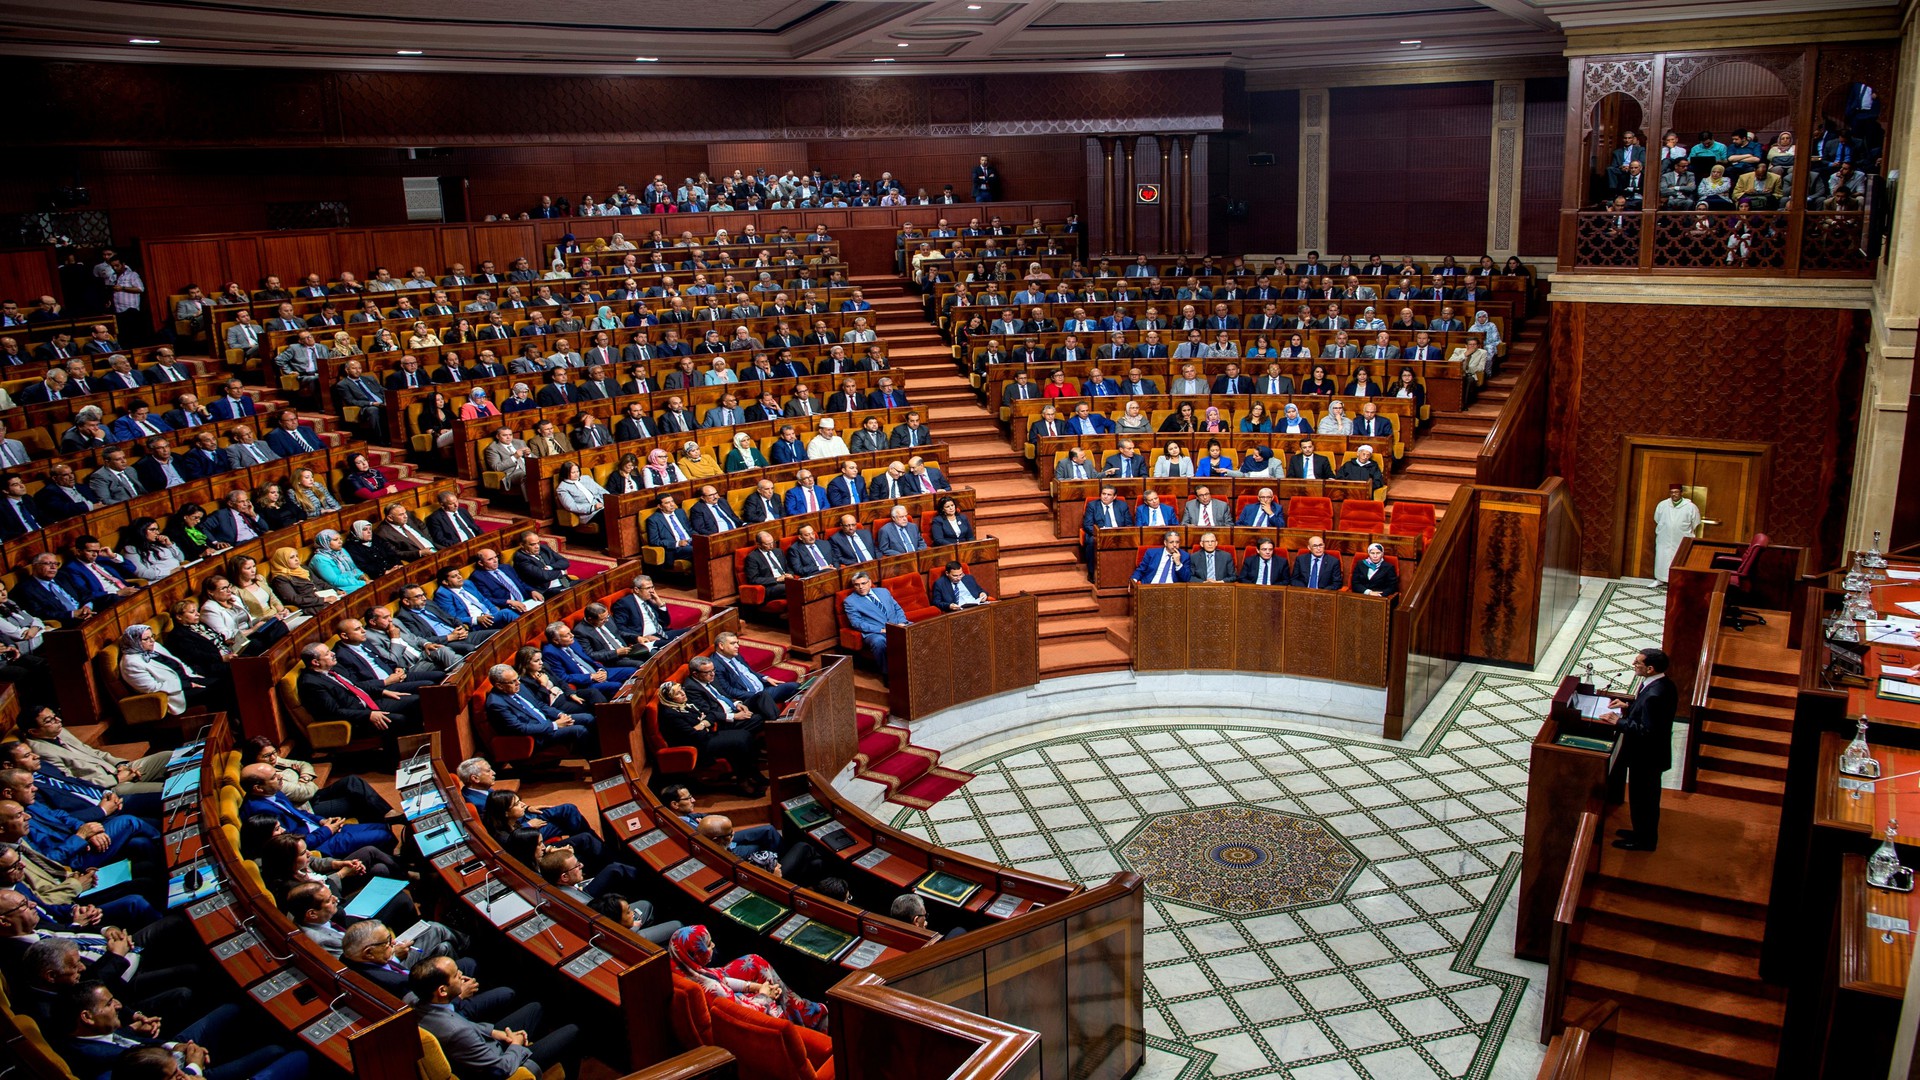 “البام” يتقدم بمقترح قانون لإلغاء تقاعد البرلمانيين وأنباء عن إضافة 30 مقعدا برلمانيا جديدا